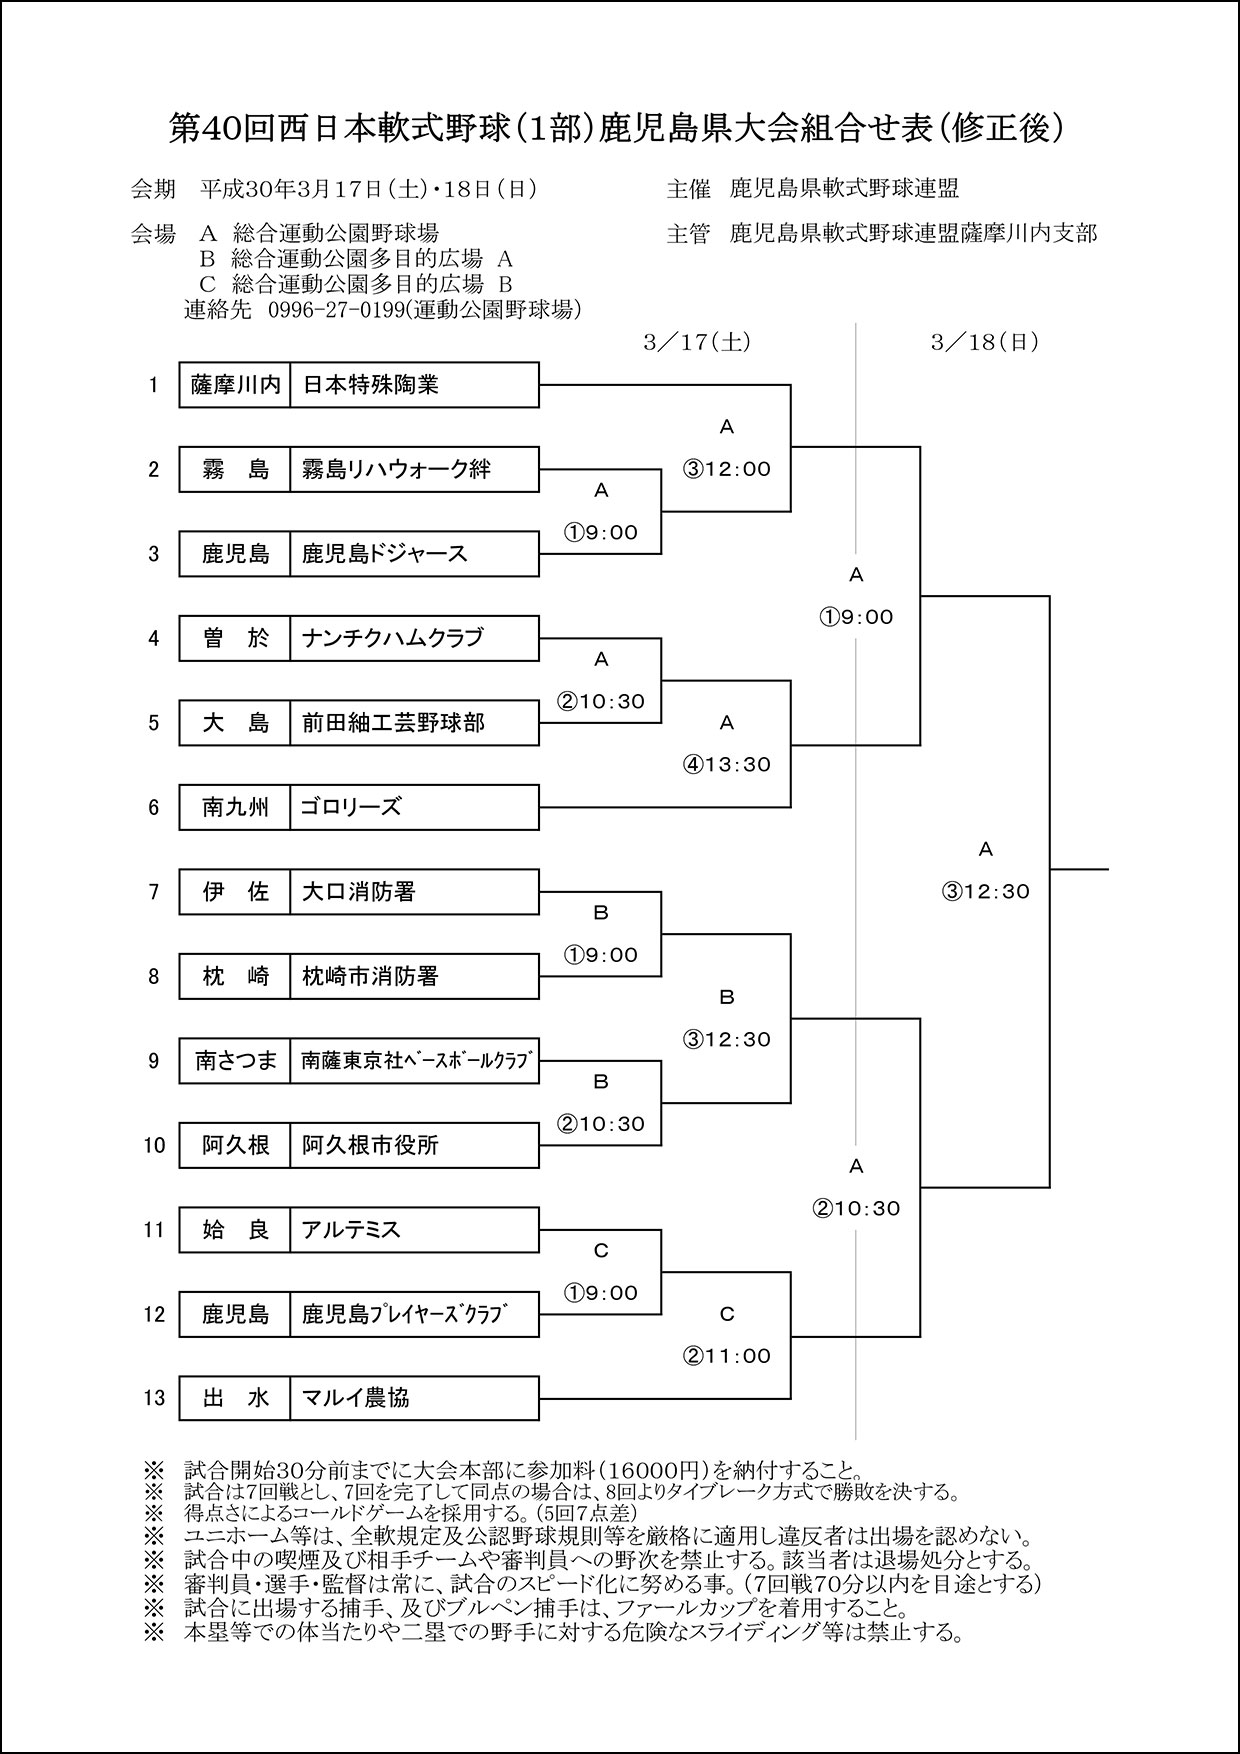 【組合せ修正後】第４０回西日本軟式野球（１部）鹿児島県大会組合せ表